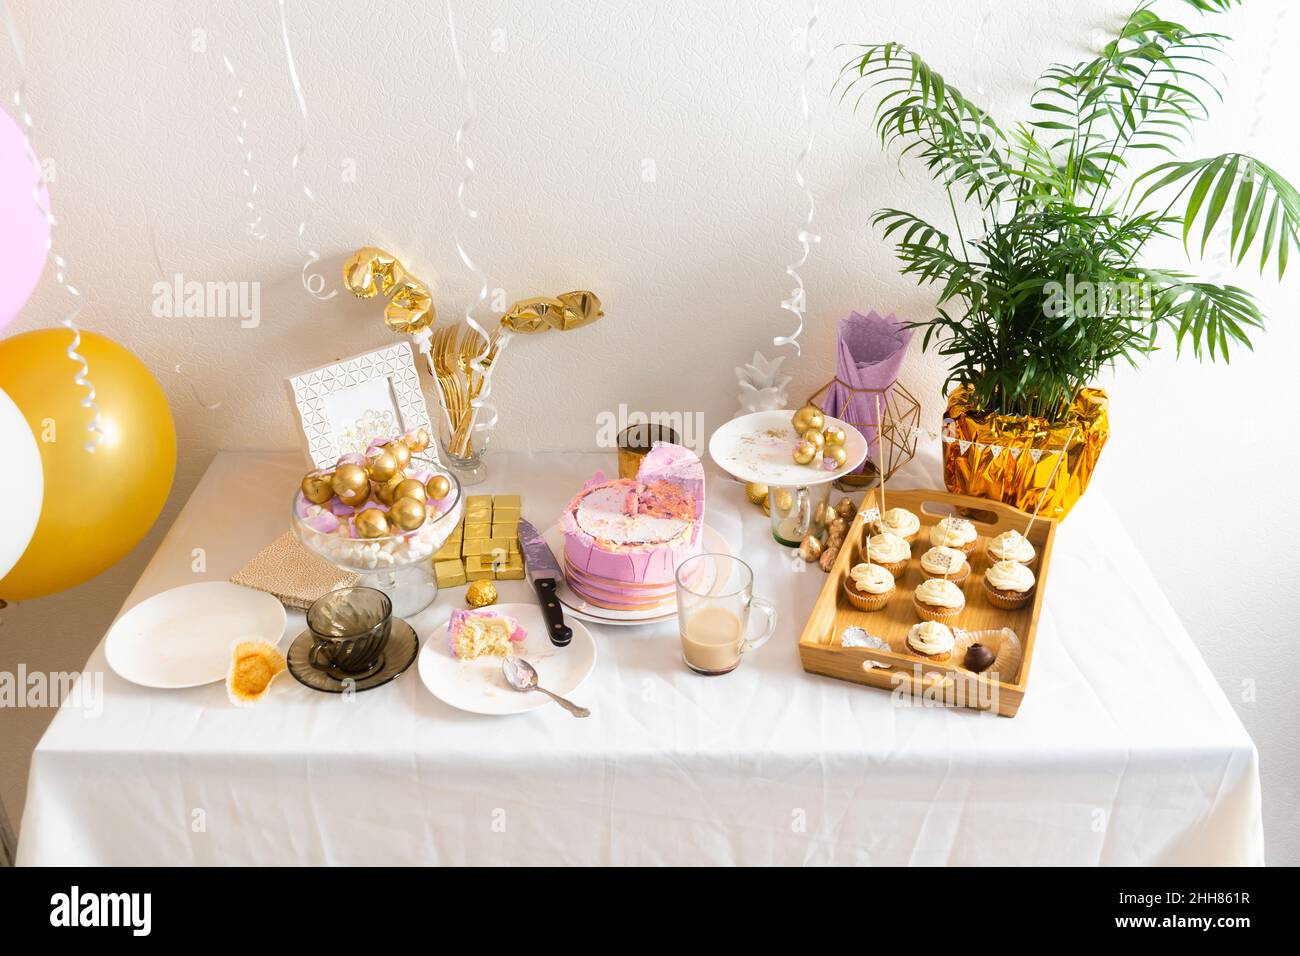 Tisch mit Essensresten nach dem Geburtstag mit Kaffee, Kuchen, Cupcakes Stockfoto